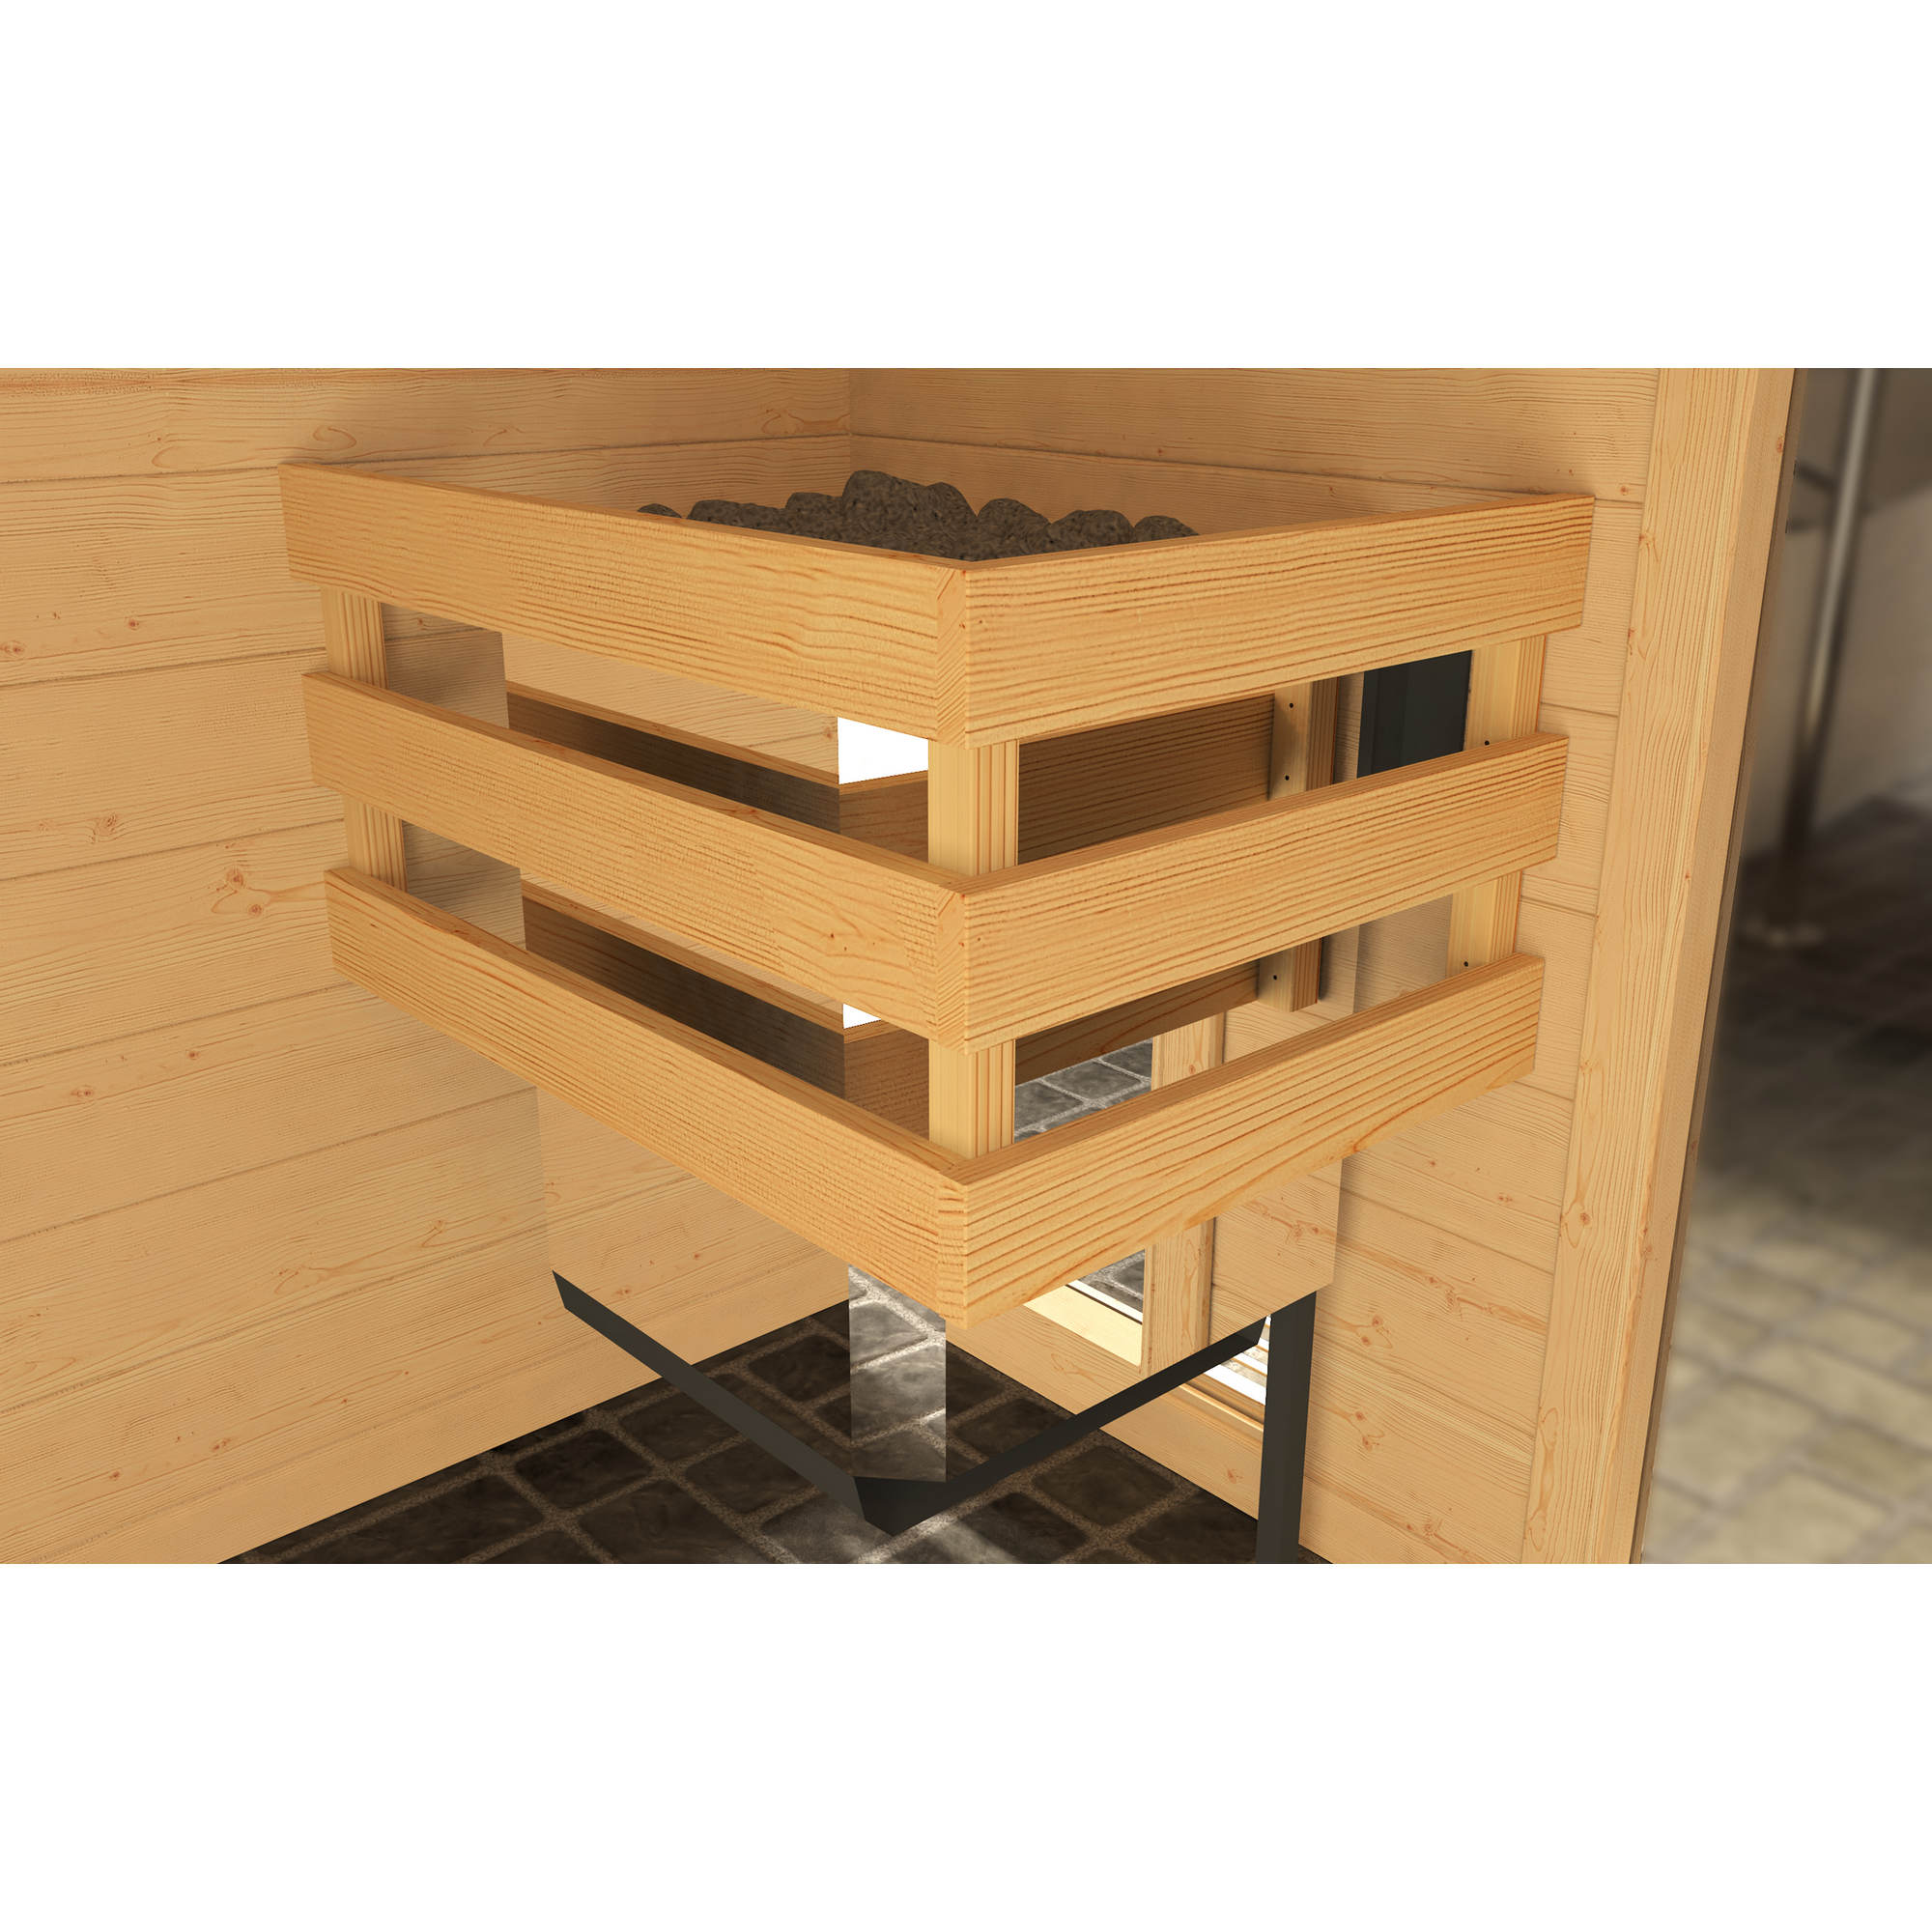 Massivholz-Sauna 'Valida 2 Eck' mit 7,5 kW BioS-Ofenset, Steuerung, Glastür, Fenster 187 x 170 x 203,5 cm + product picture